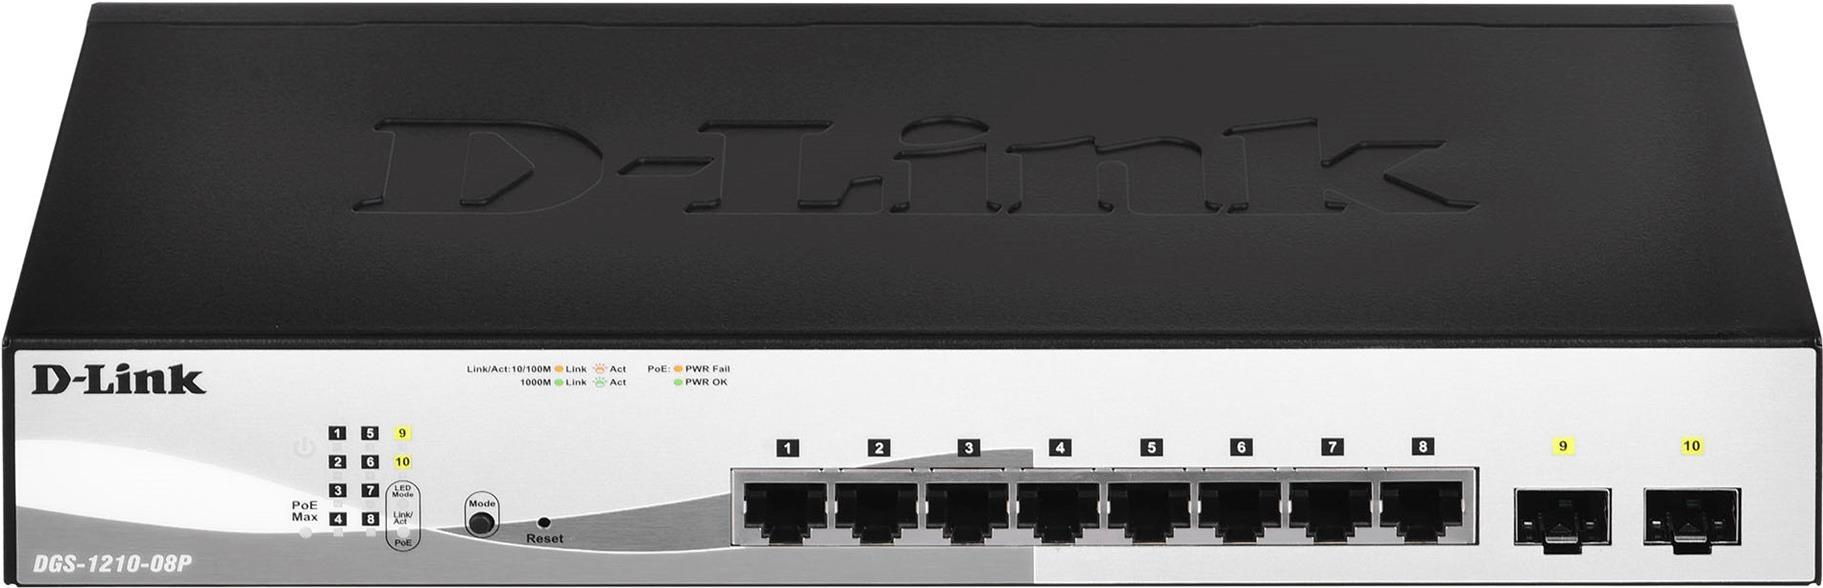 D-LINK 8-Port Layer2 PoE Smart Managed Gigabit Switchdlink|green 3.0, 8x 10/100/1000Mbit/s TP (RJ-45